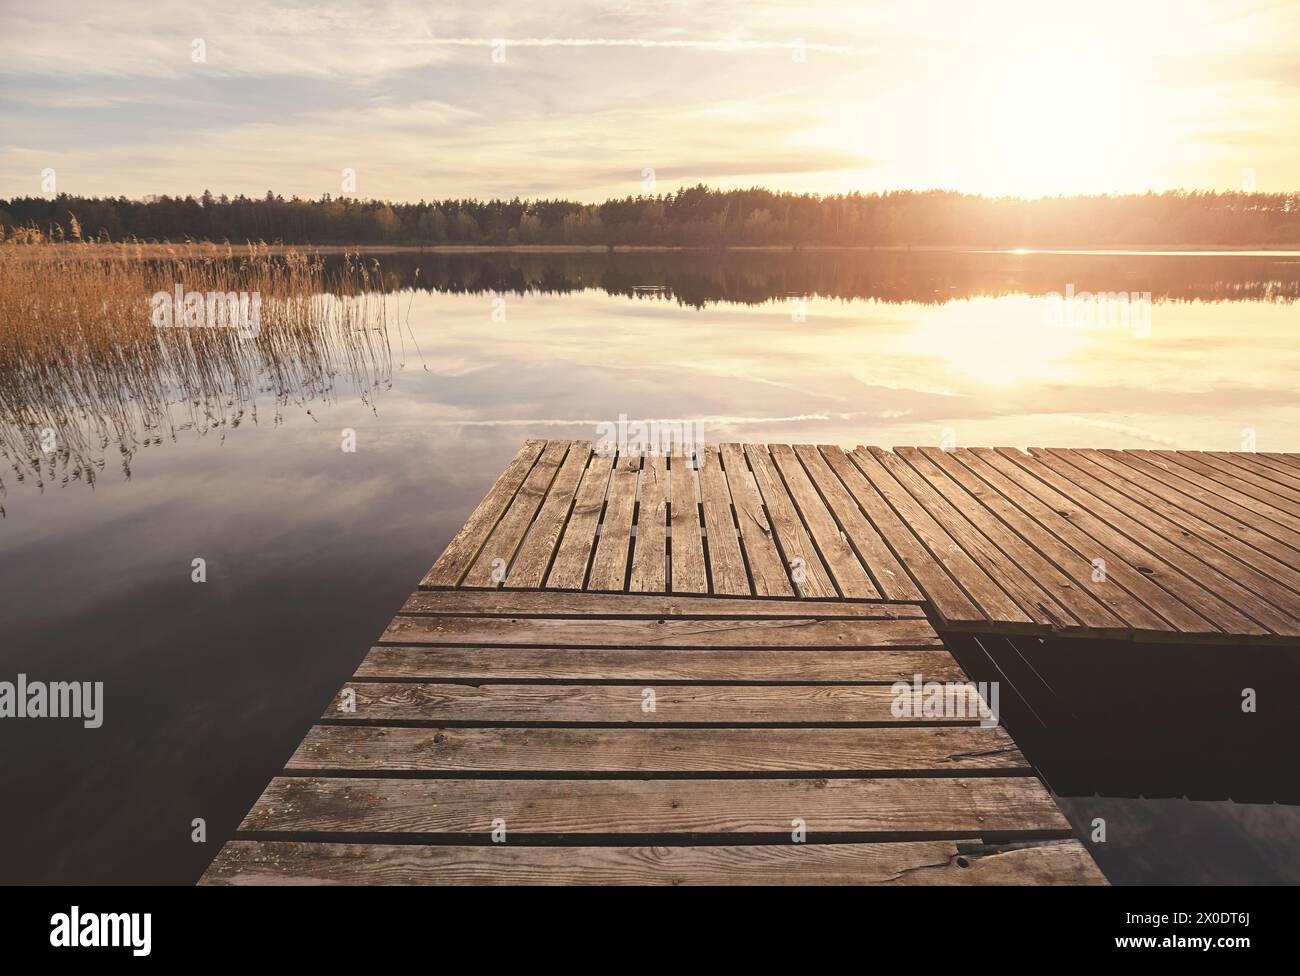 Jetée sur un lac au coucher du soleil, Voïvodie de Poméranie occidentale, Pologne. Banque D'Images